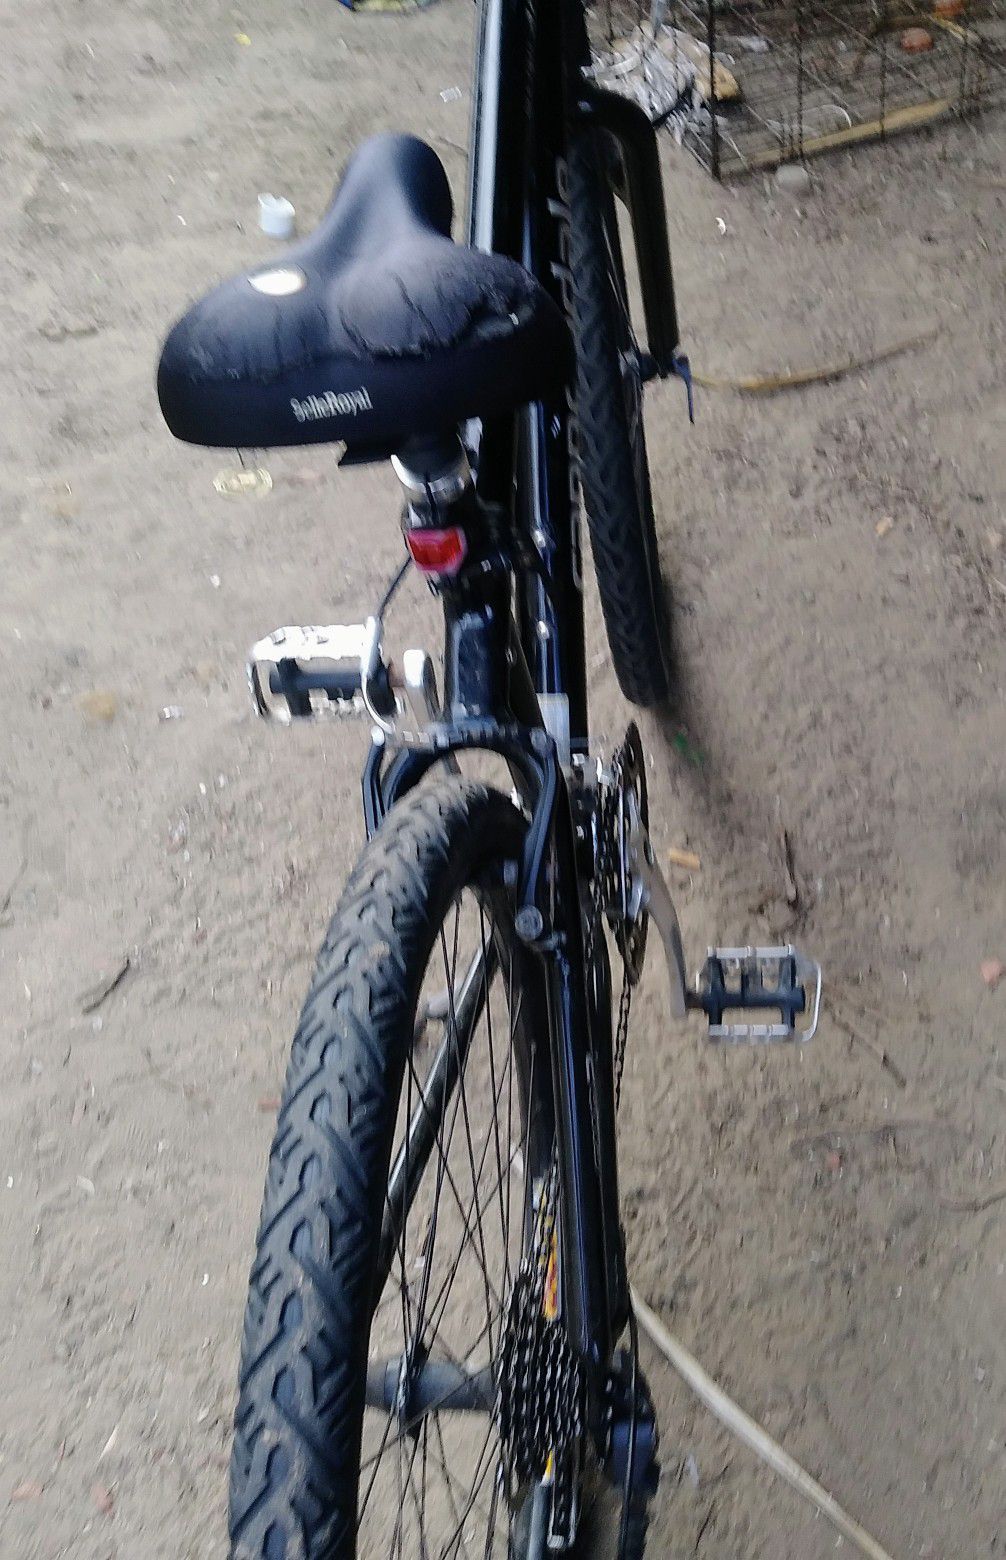 Silk trail 400 cannondale pbone bike